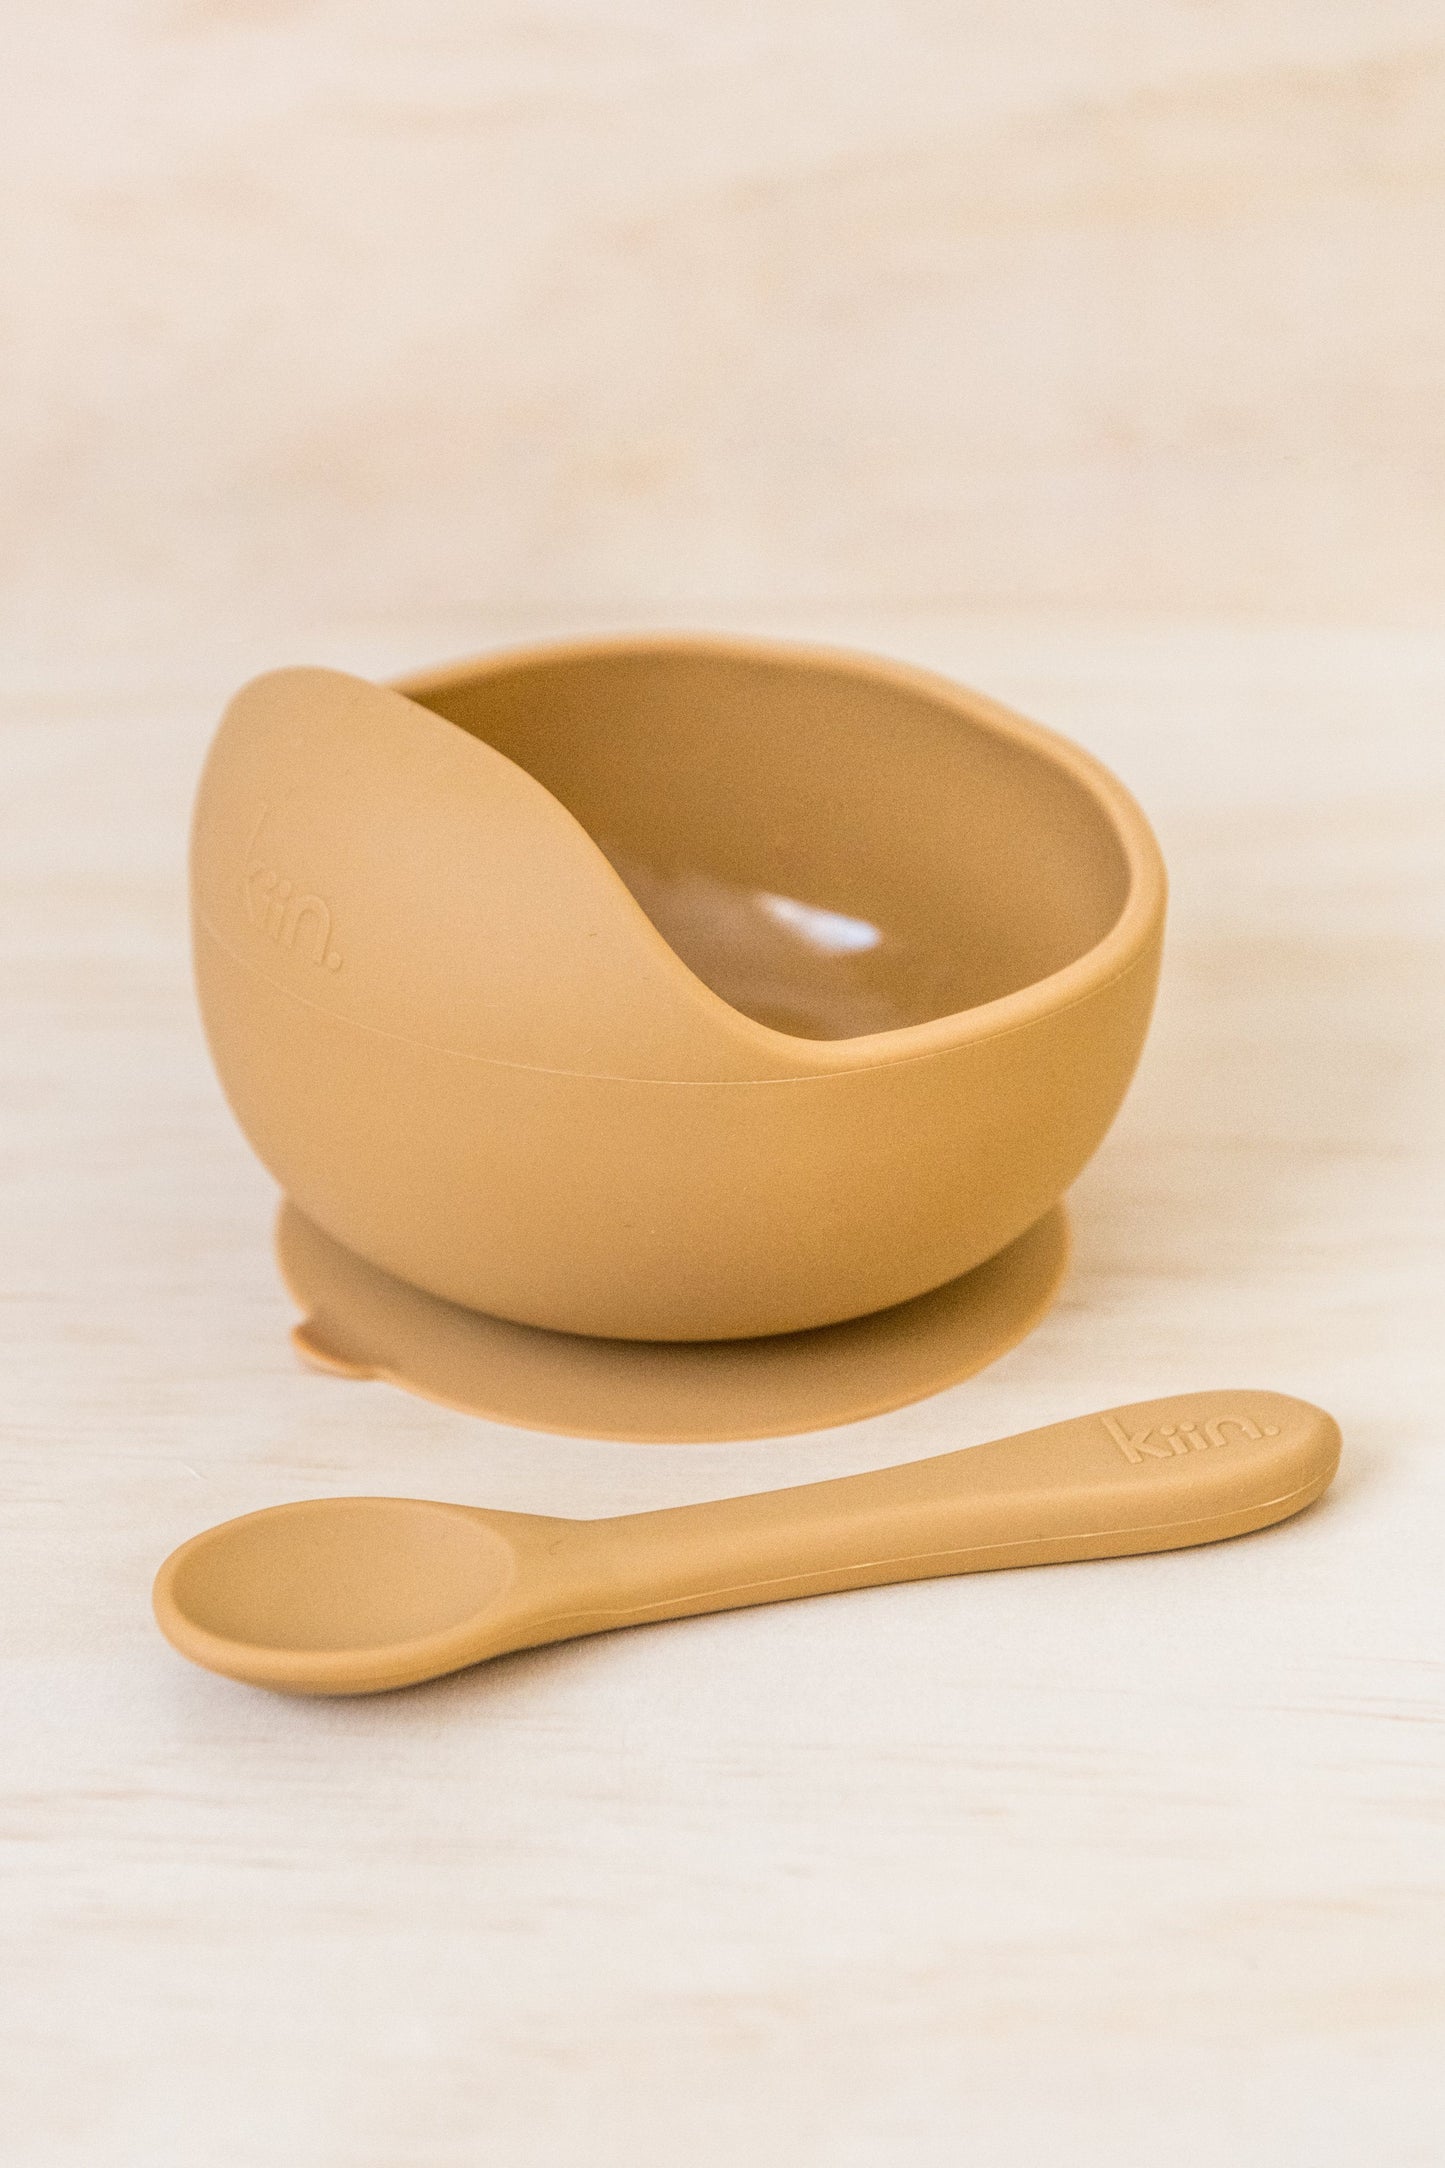 Kiin - Silicone Bowl + Spoon Set (Tan)